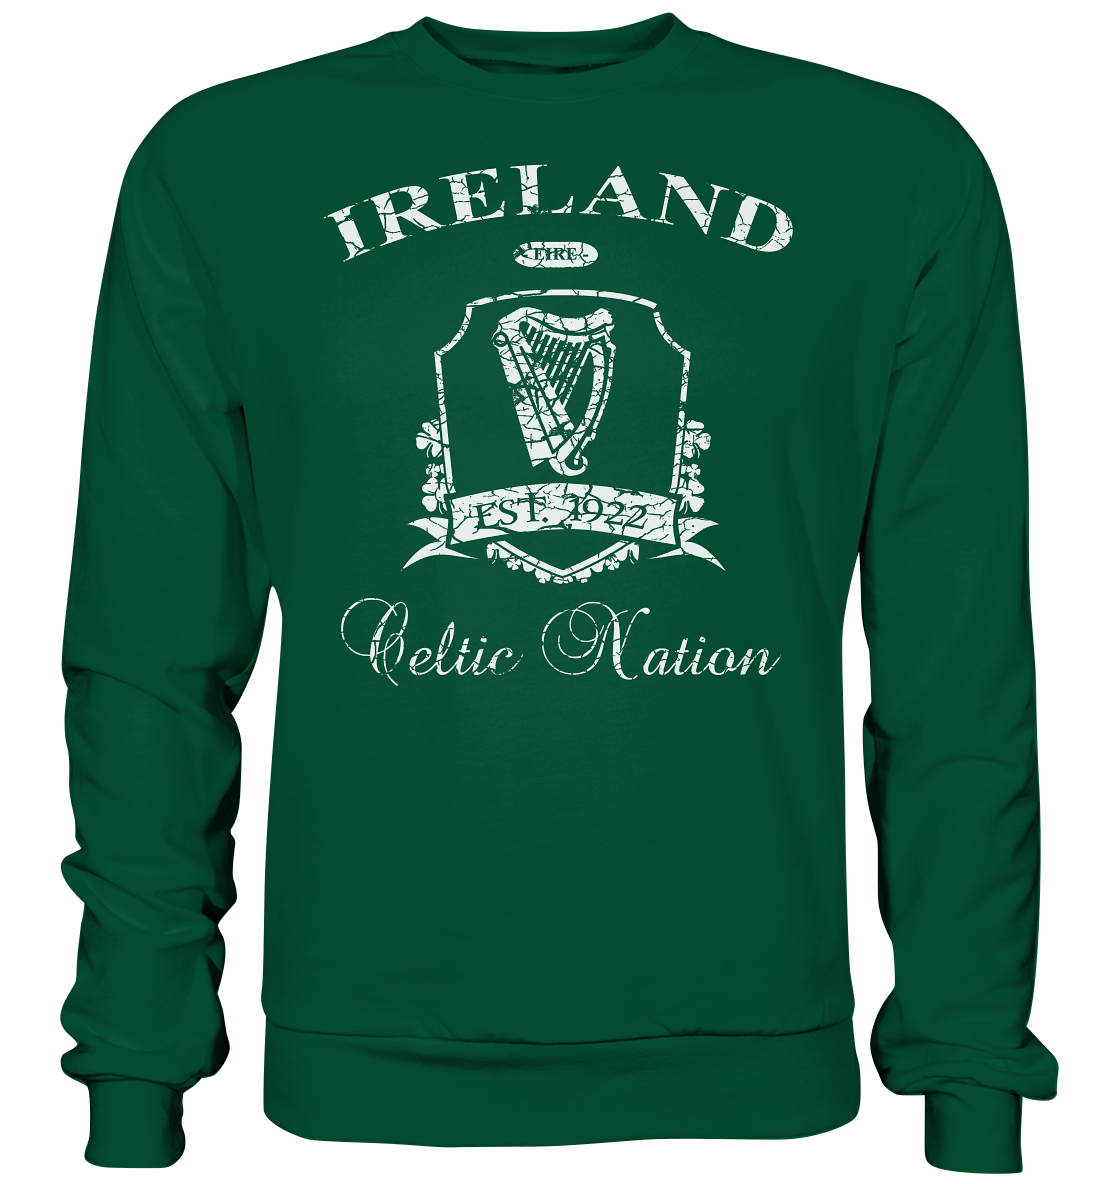 Ireland "Celtic Nation II" - Basic Sweatshirt